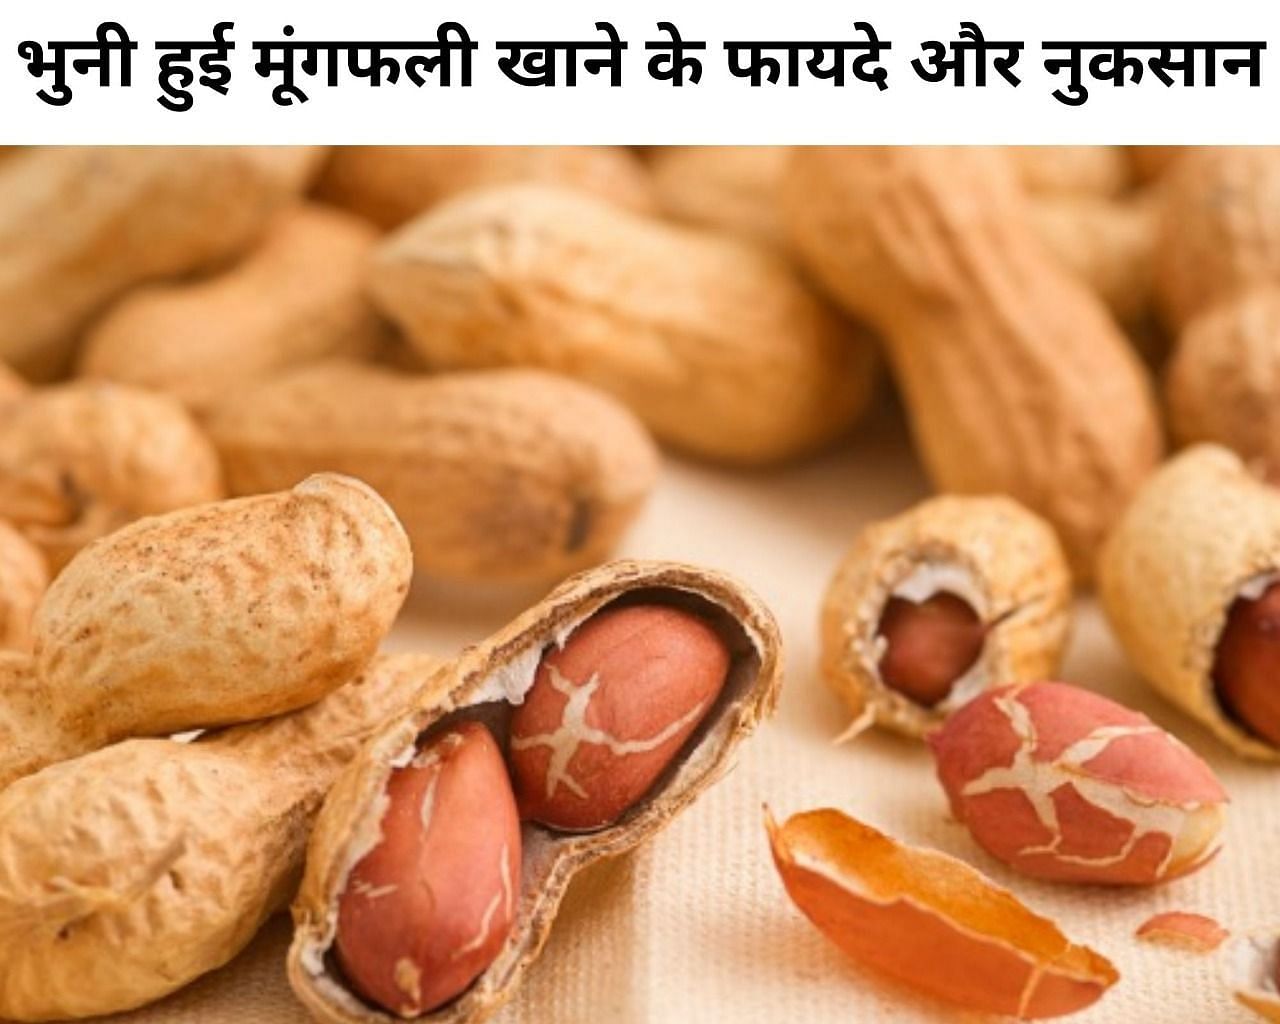 भुनी हुई मूंगफली खाने के फायदे और नुकसान (फोटो - sportskeeda hindi)